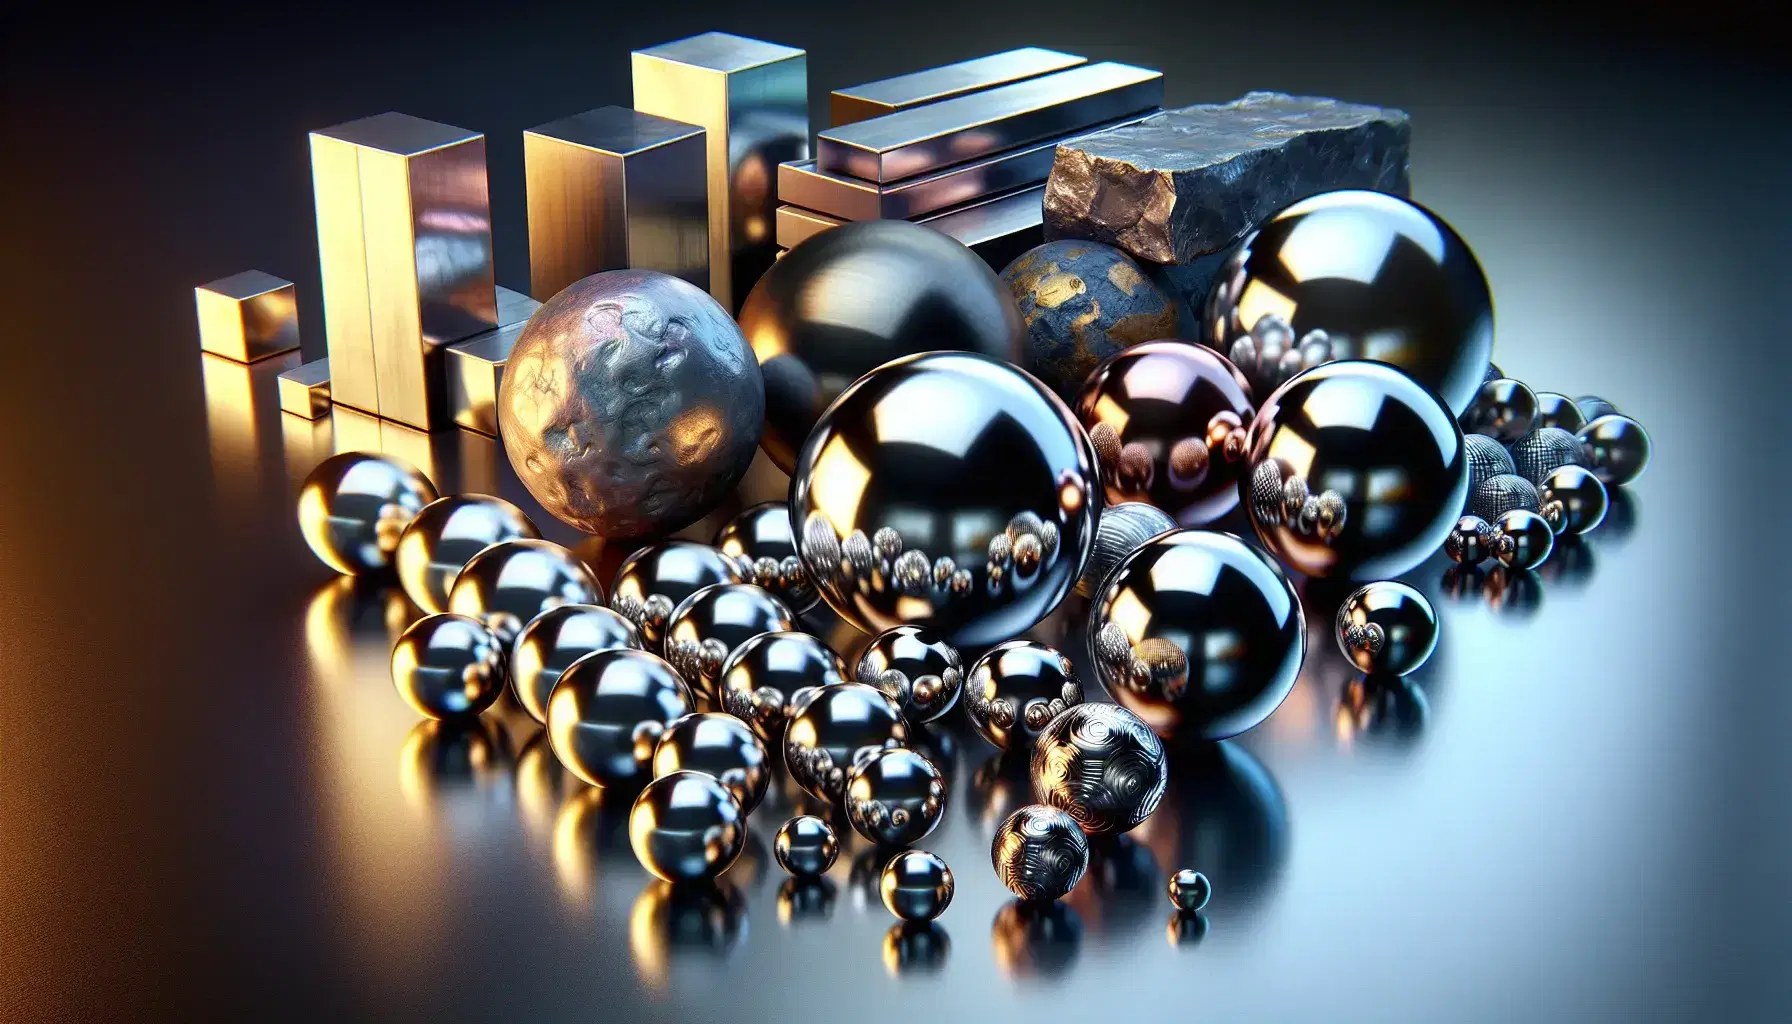 Colección de esferas metálicas pulidas y barras de diferentes metales sobre superficie oscura reflejante, con discos brillantes y mineral gris en el fondo.